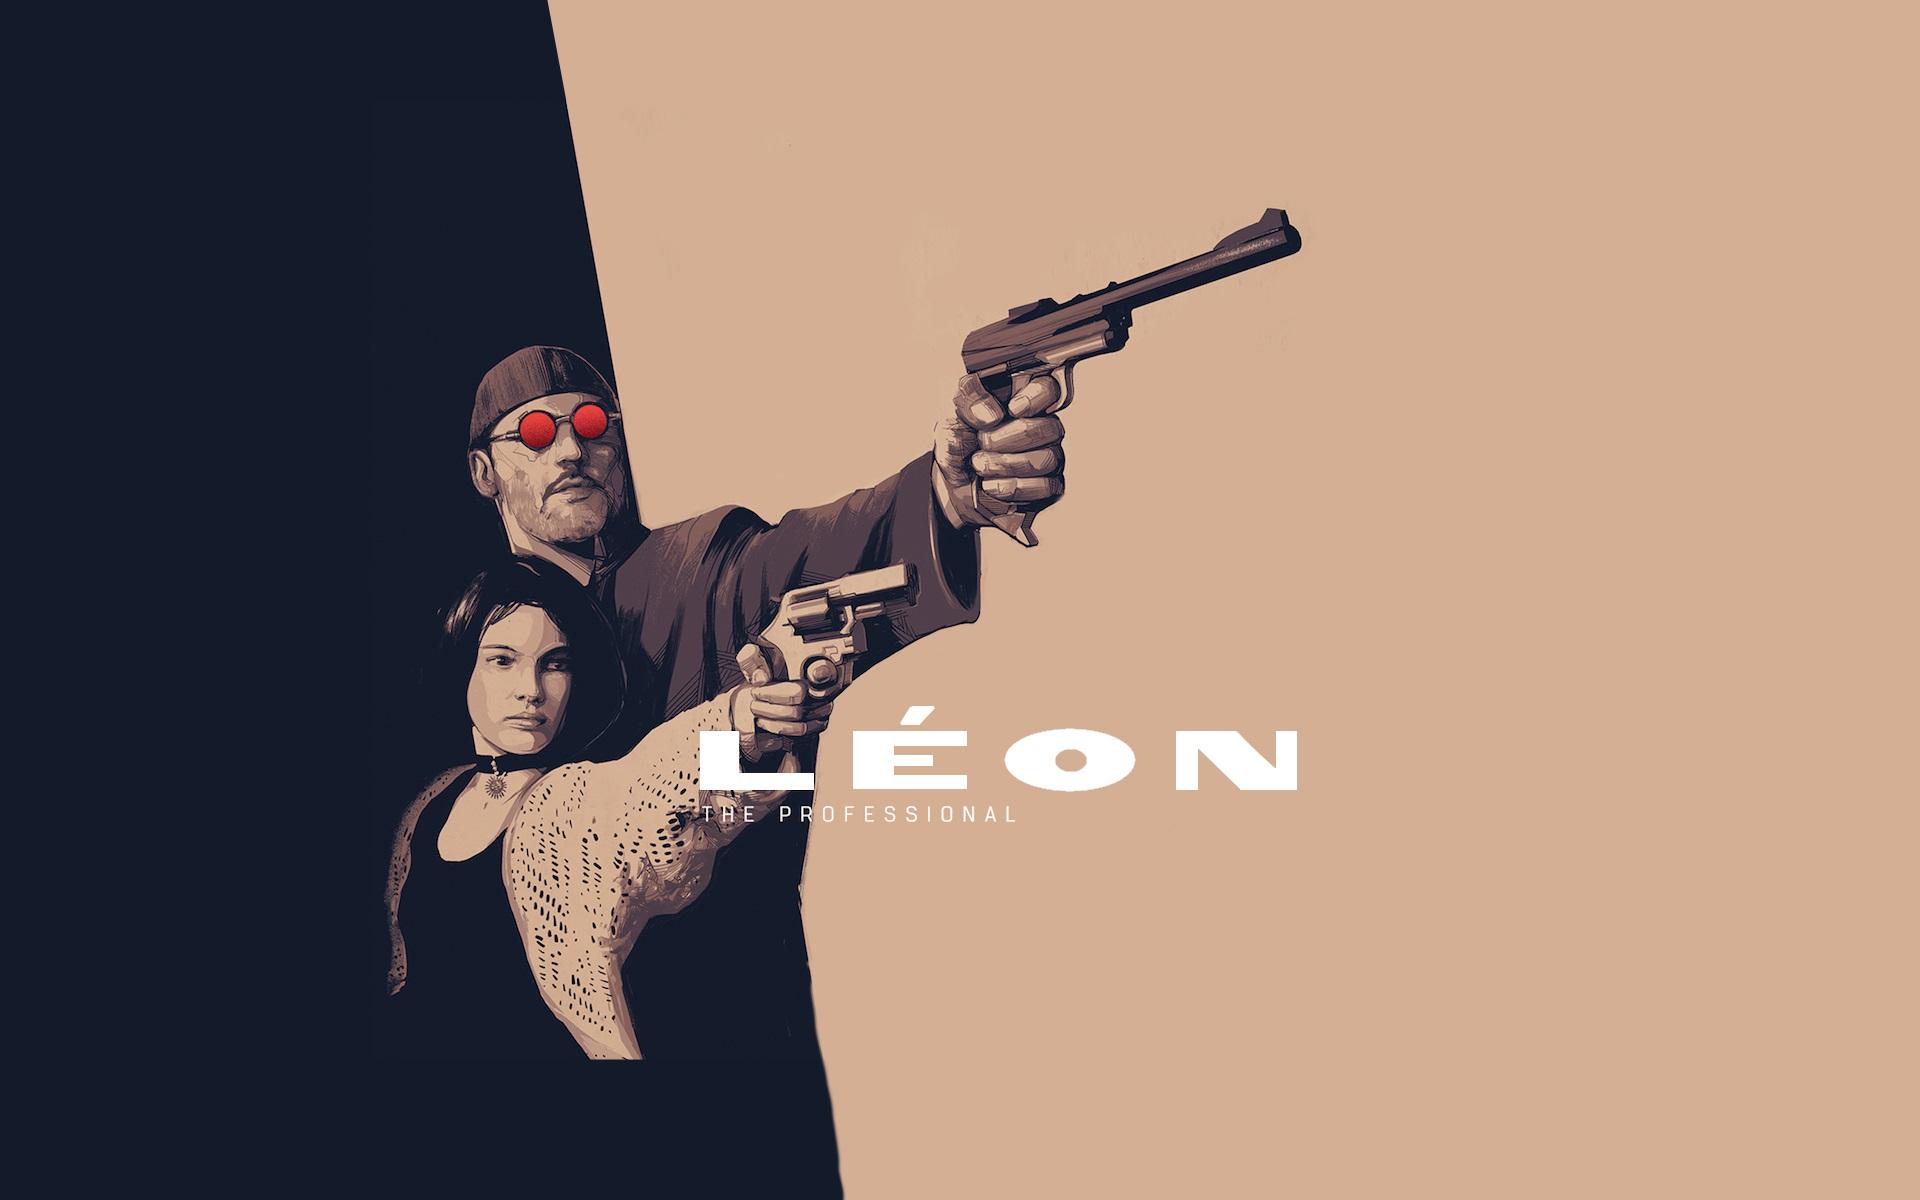 دانلود فیلم Léon: The Professional 1994